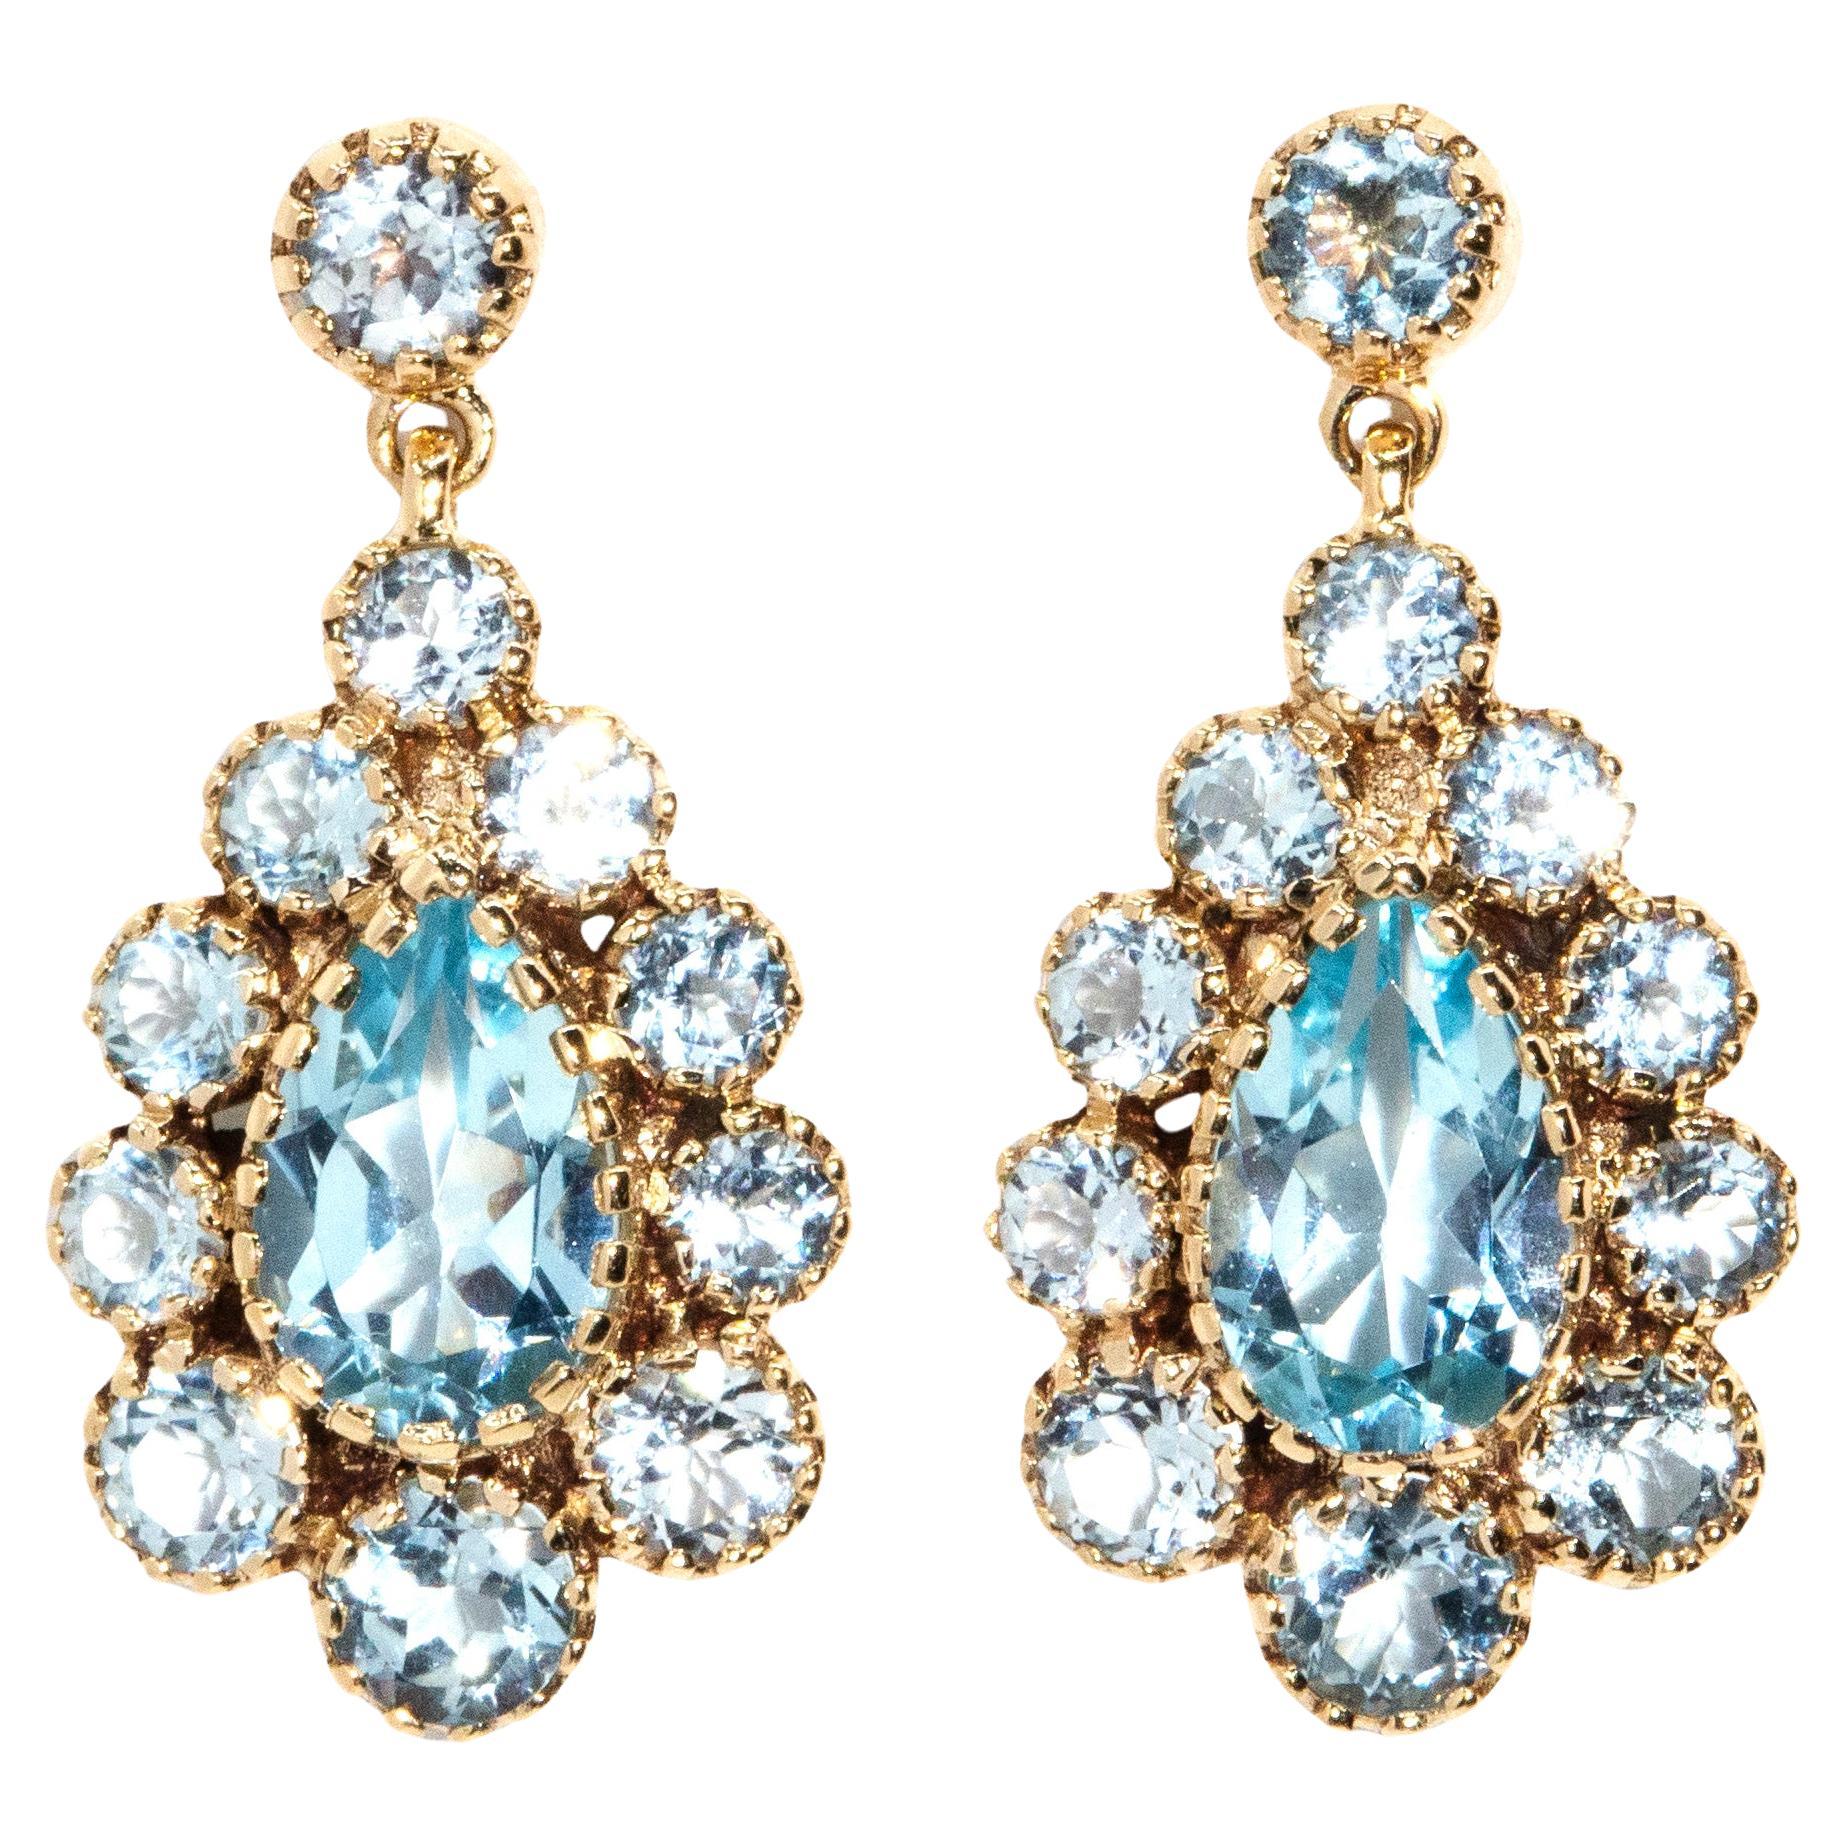 Boucles d'oreilles pendantes d'inspiration Art déco en or rose 9 carats avec topaze bleue